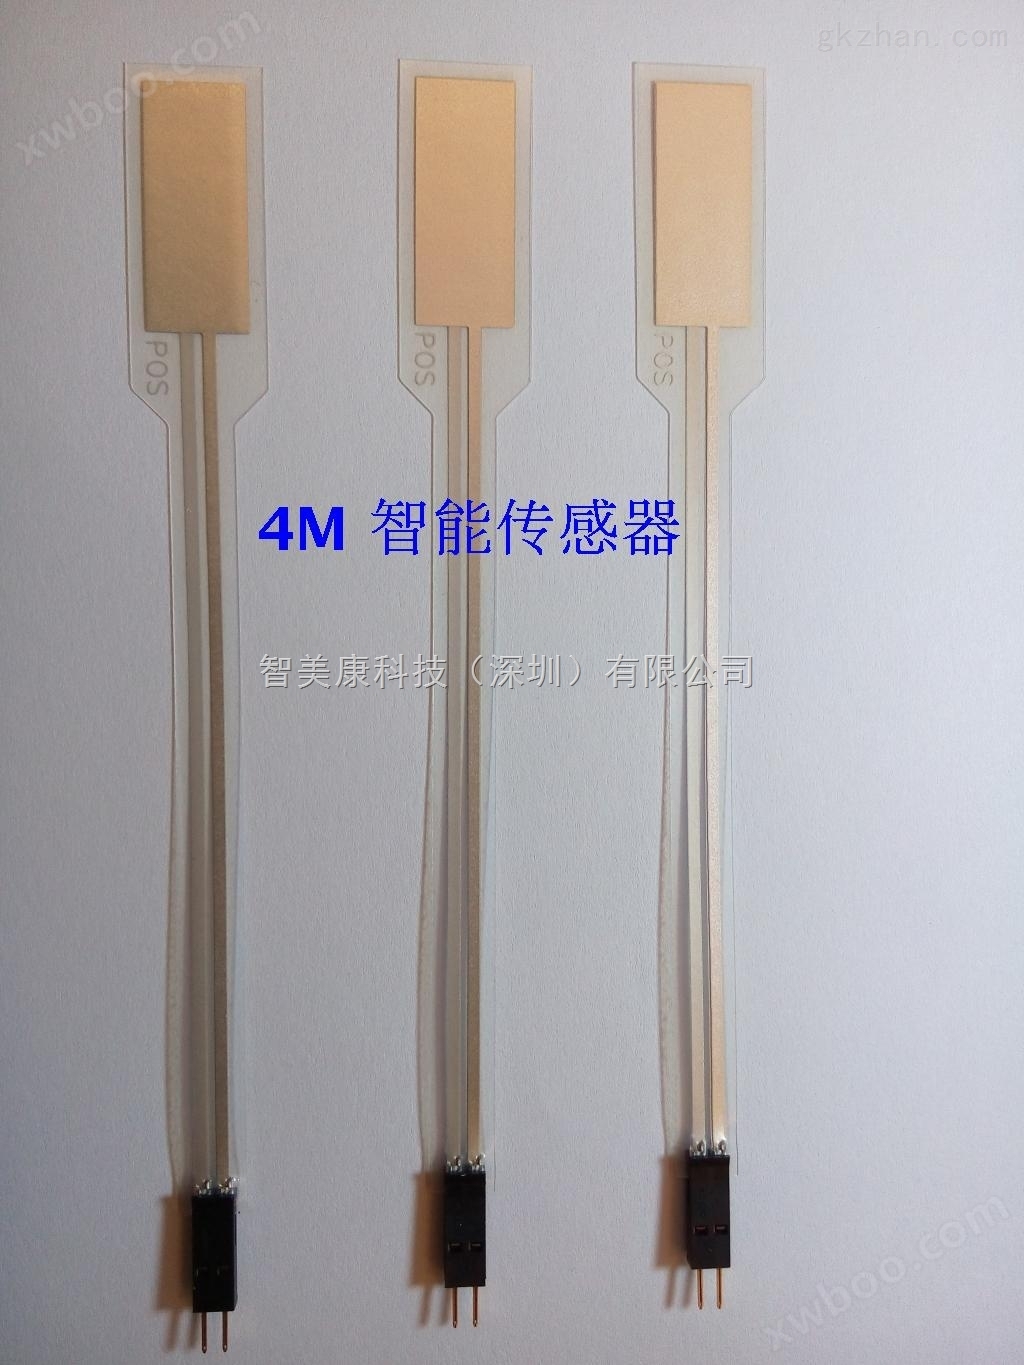 220KHZ超声波传感器NDT1-220K是PVDF压电薄膜传感器薄膜水听器高频超声波传感器